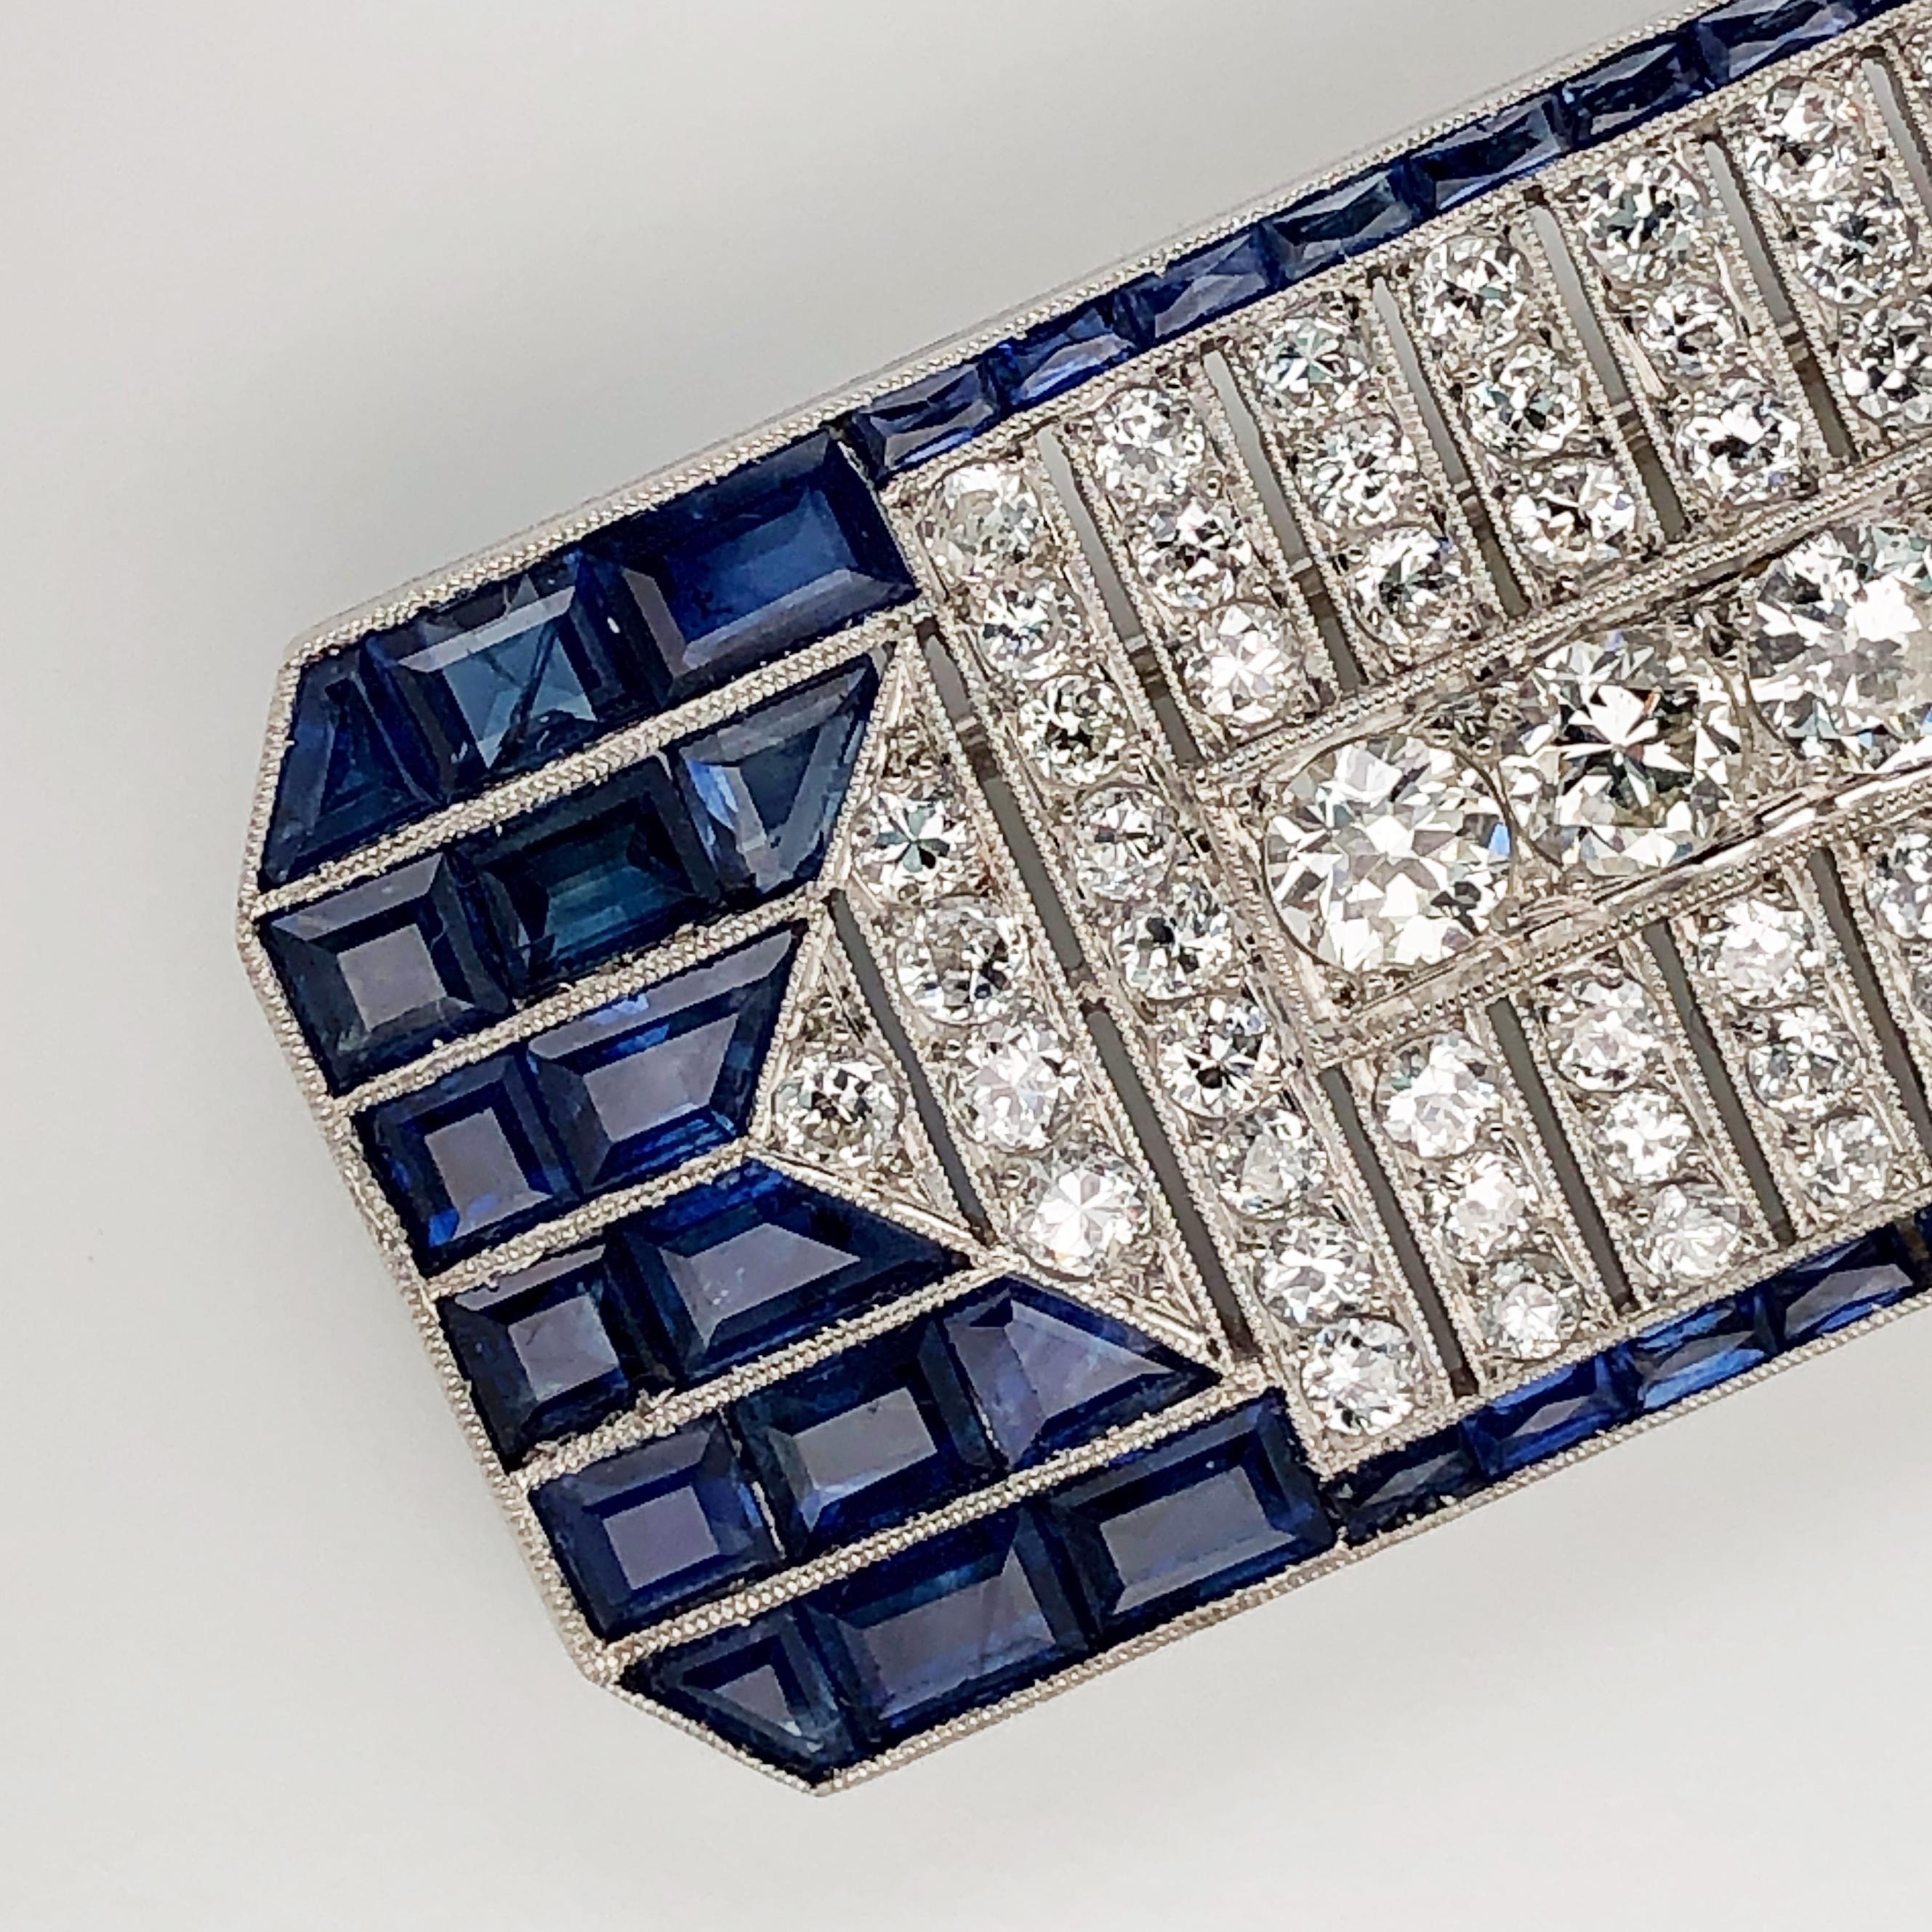 Diese Platinbrosche aus dem Nachlass von Oscar Heyman enthält 121 Diamanten im alten europäischen Schliff (~9cts) und 74 Baguette- und quadratische Saphire (~16cts). Der mittlere Diamant misst 6 mm; die Qualität ist nicht angegeben. 

Die